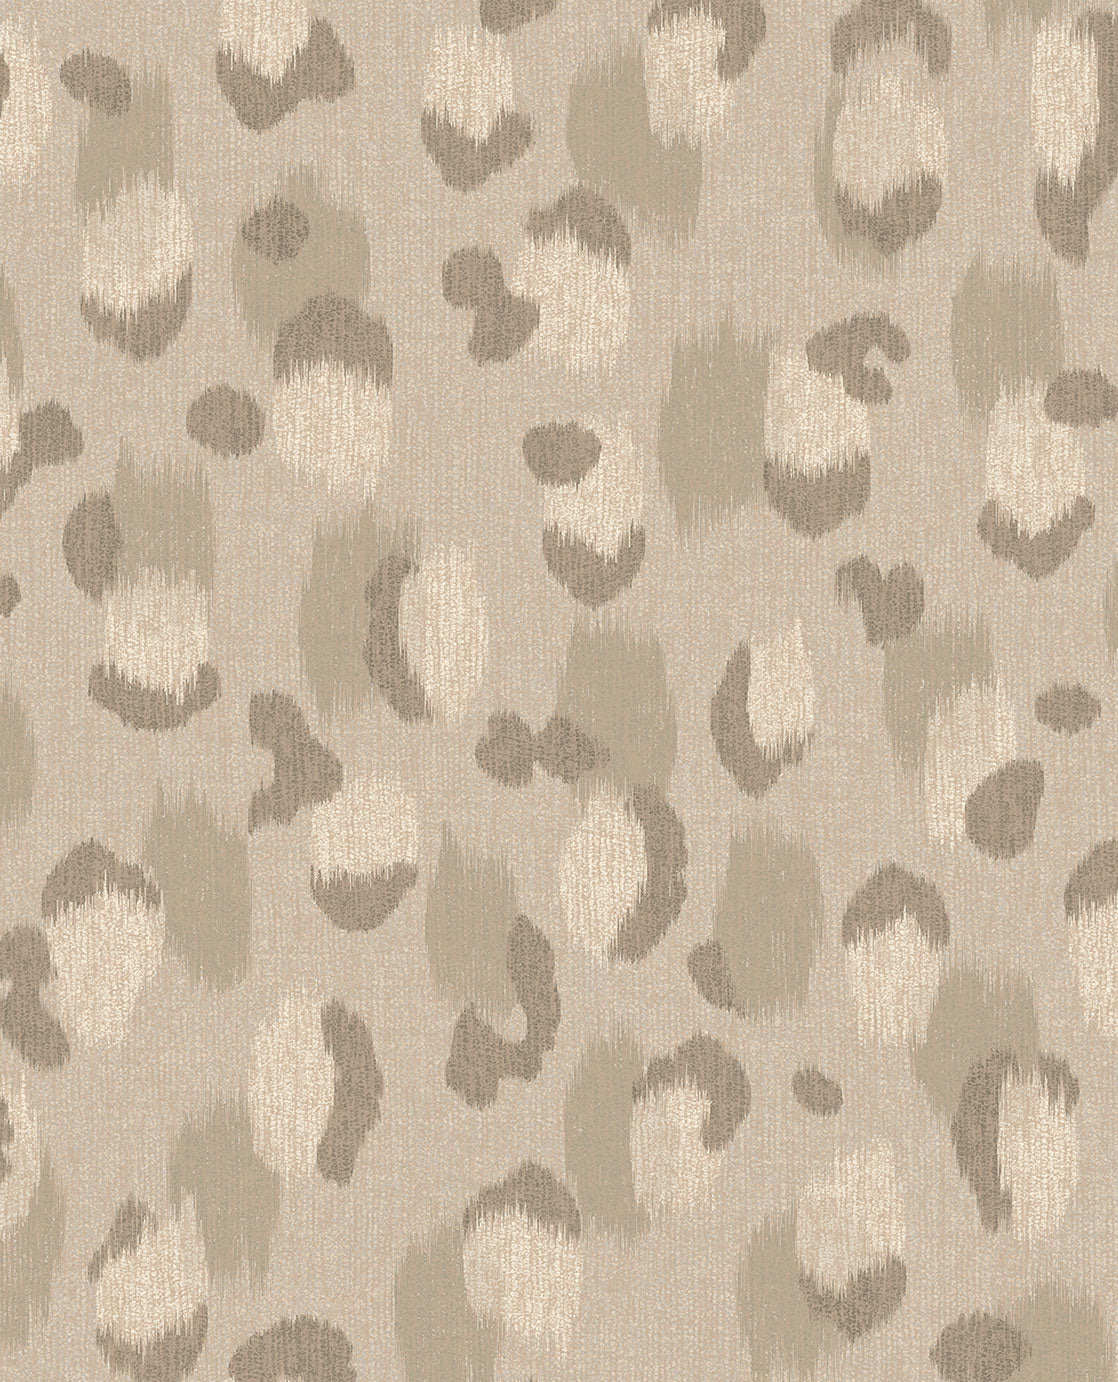 Skin Leopard Spots wallpaper